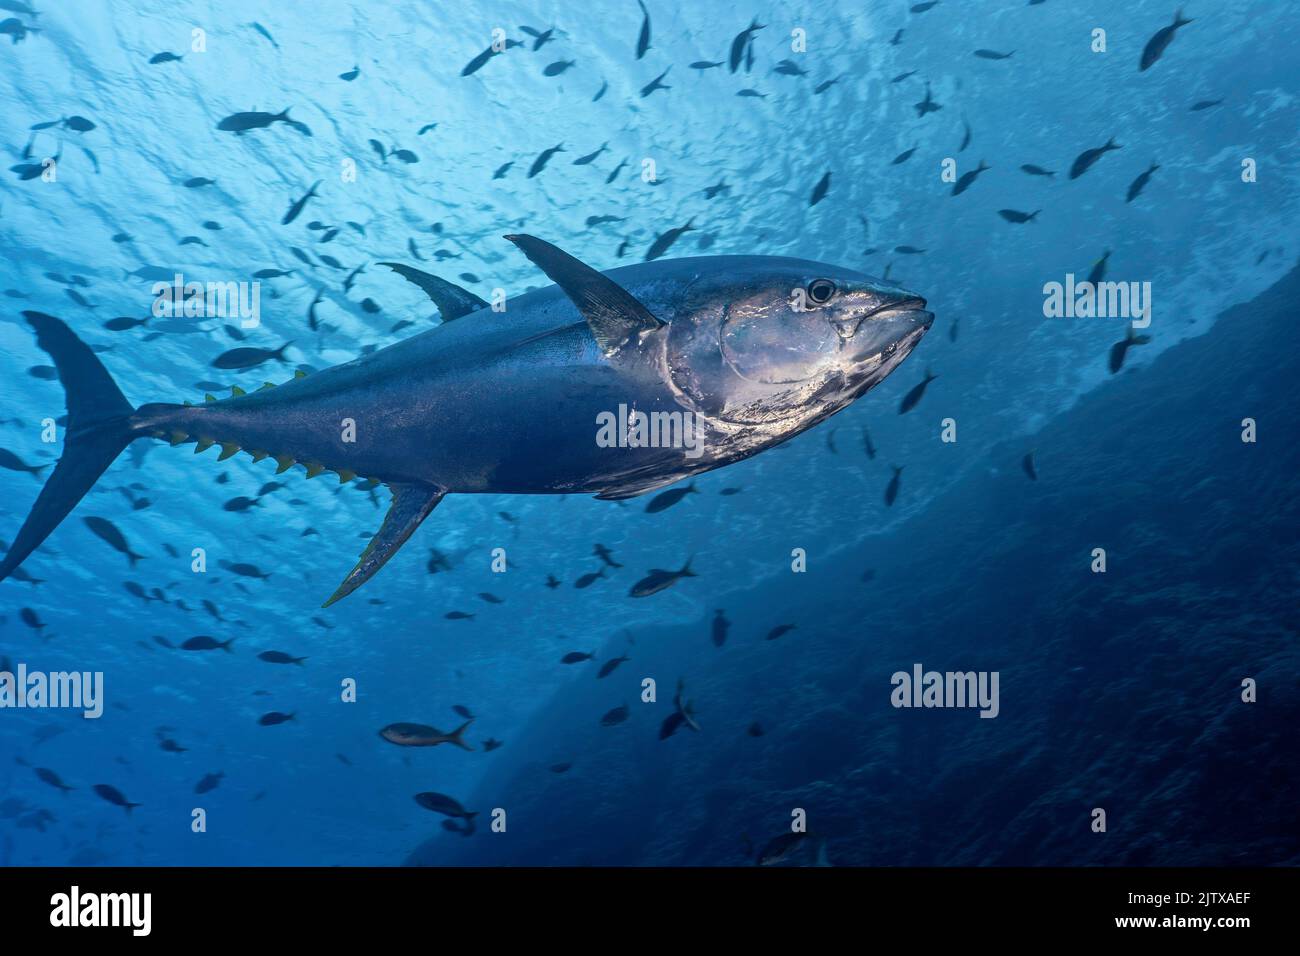 Imagen submarina de un atún aleta amarilla (Thunnus albacarens). Foto de stock